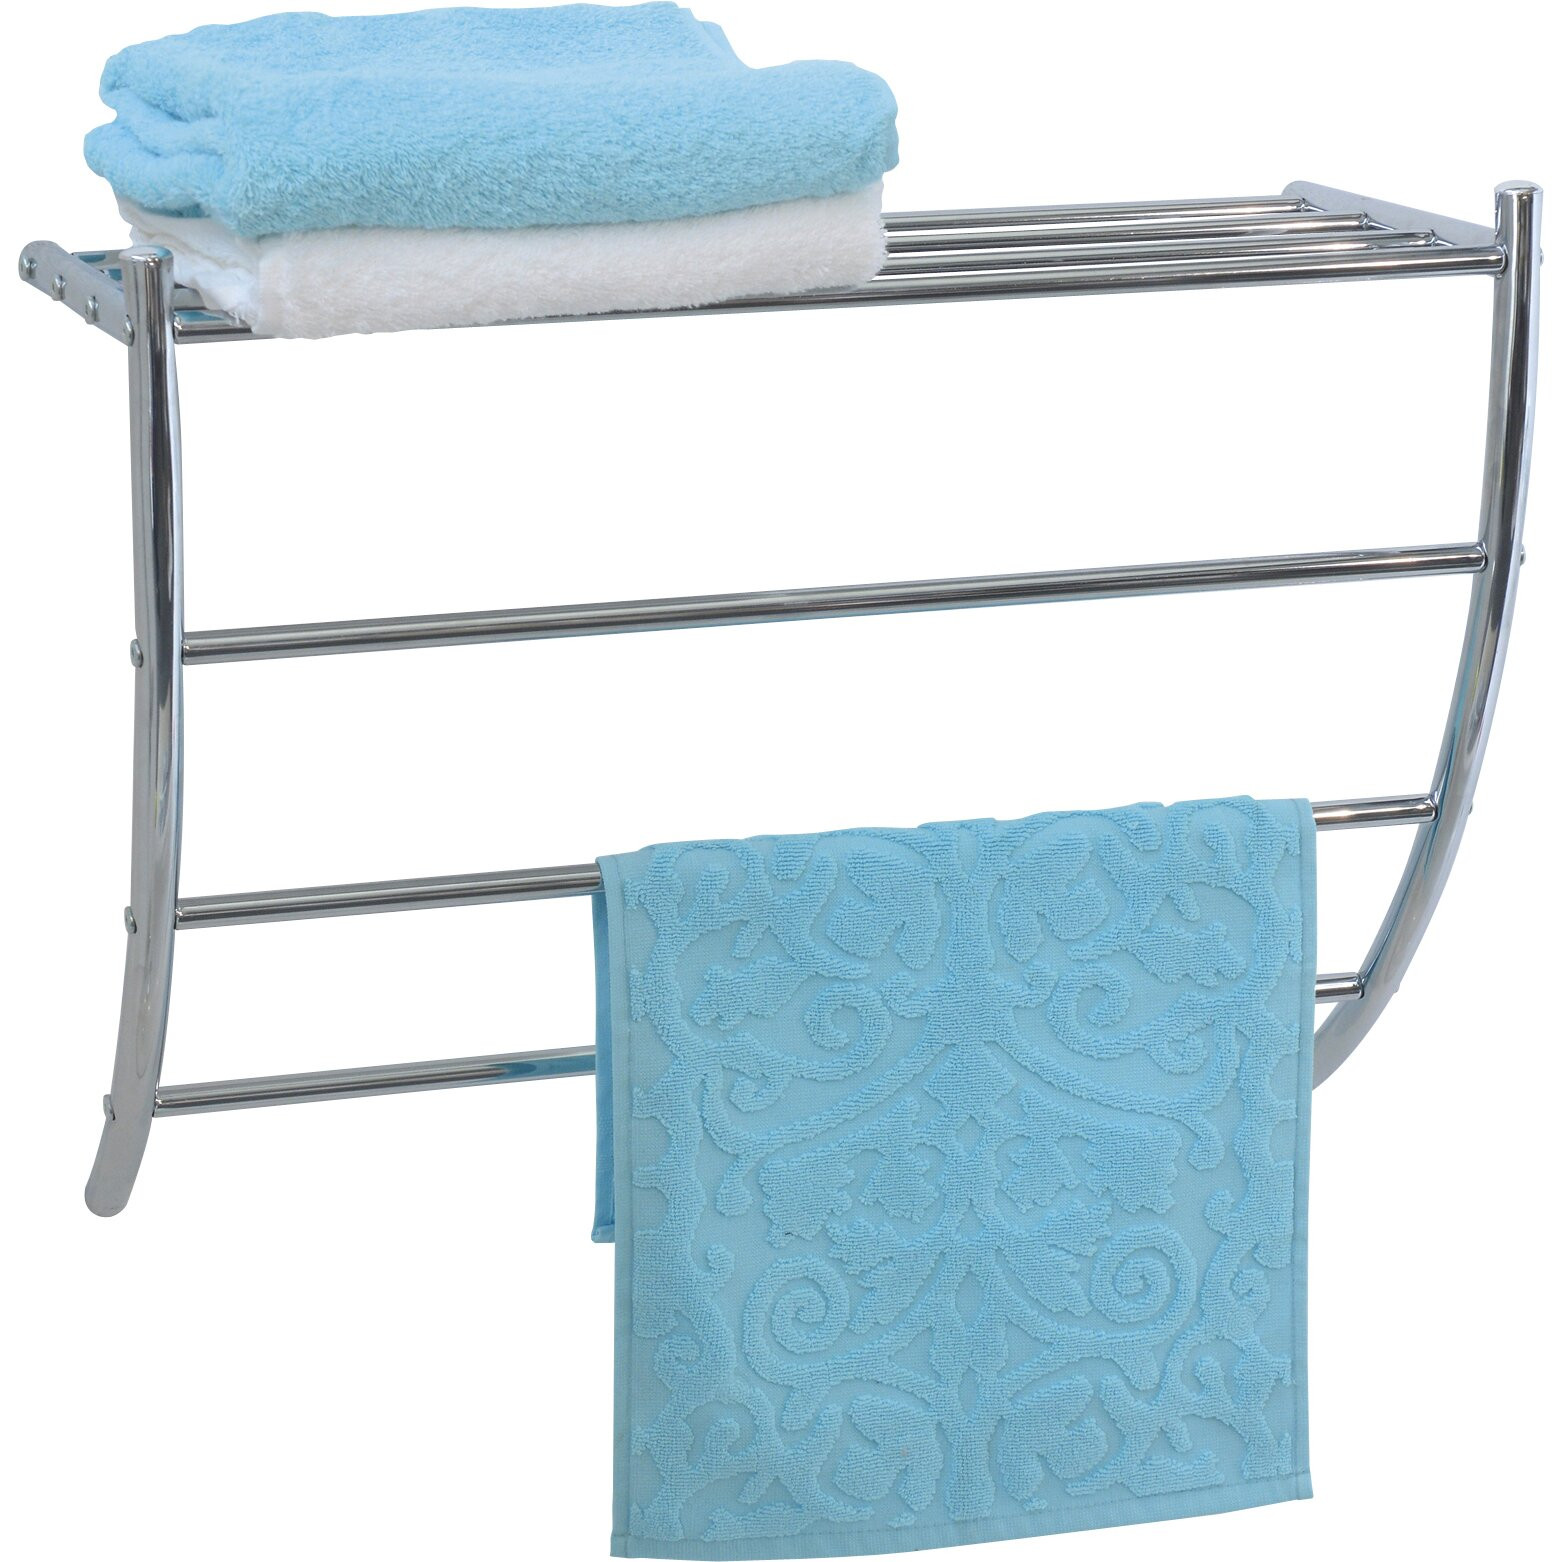 Wall Mounted Bathroom Towel Rack
 Evideco Wall Mounted Bath Shelf and Towel Rack & Reviews